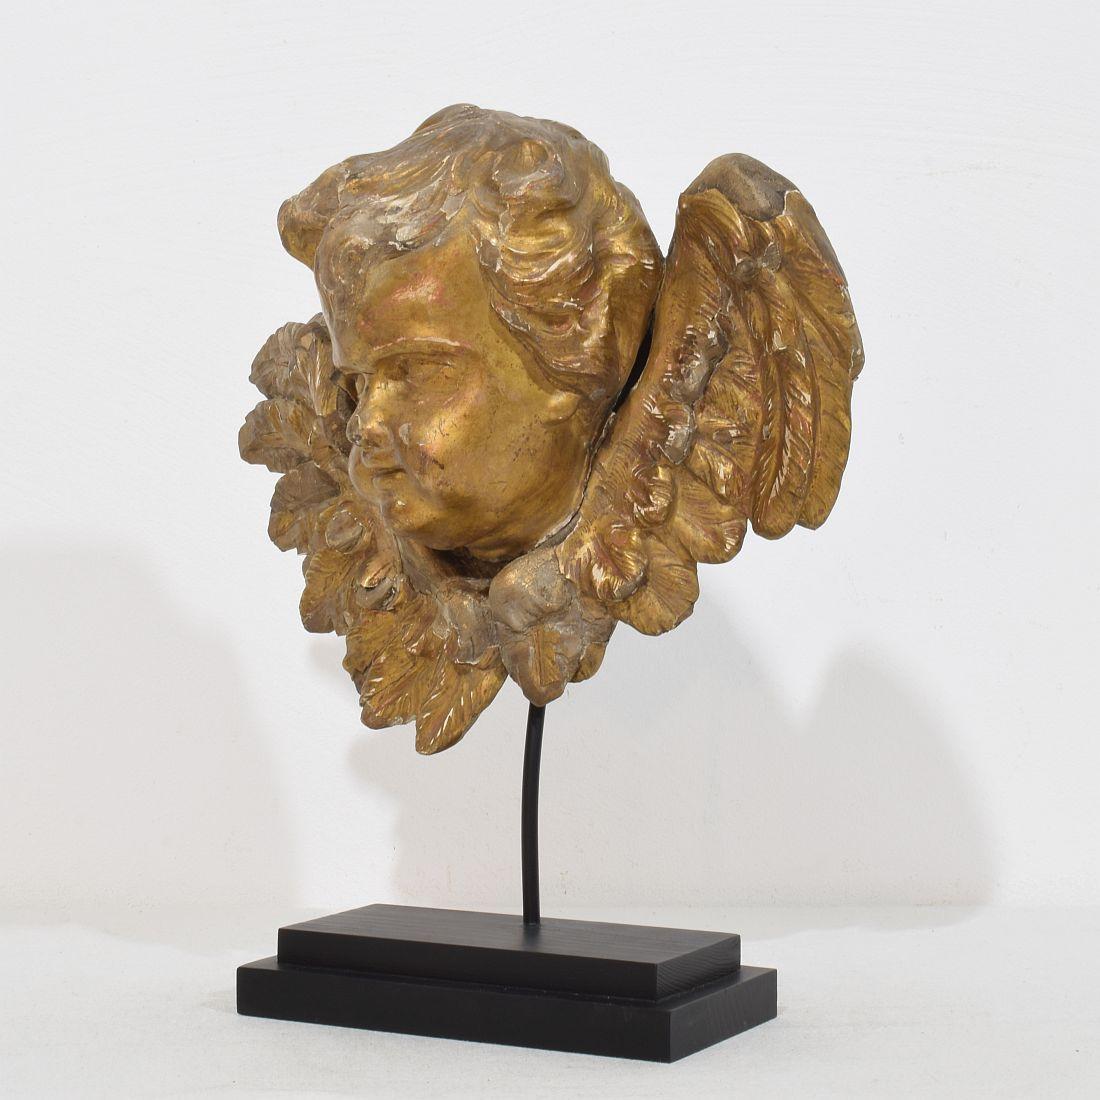 Magnifique tête d'ange en bois doré patiné par les intempéries.
France, vers 1700-1750
Altéré, plusieurs pertes sur la dorure et réparations anciennes qui conviennent à son grand âge.
Mesure ci-dessous incluant la base en bois.

H:32cm  L:27cm